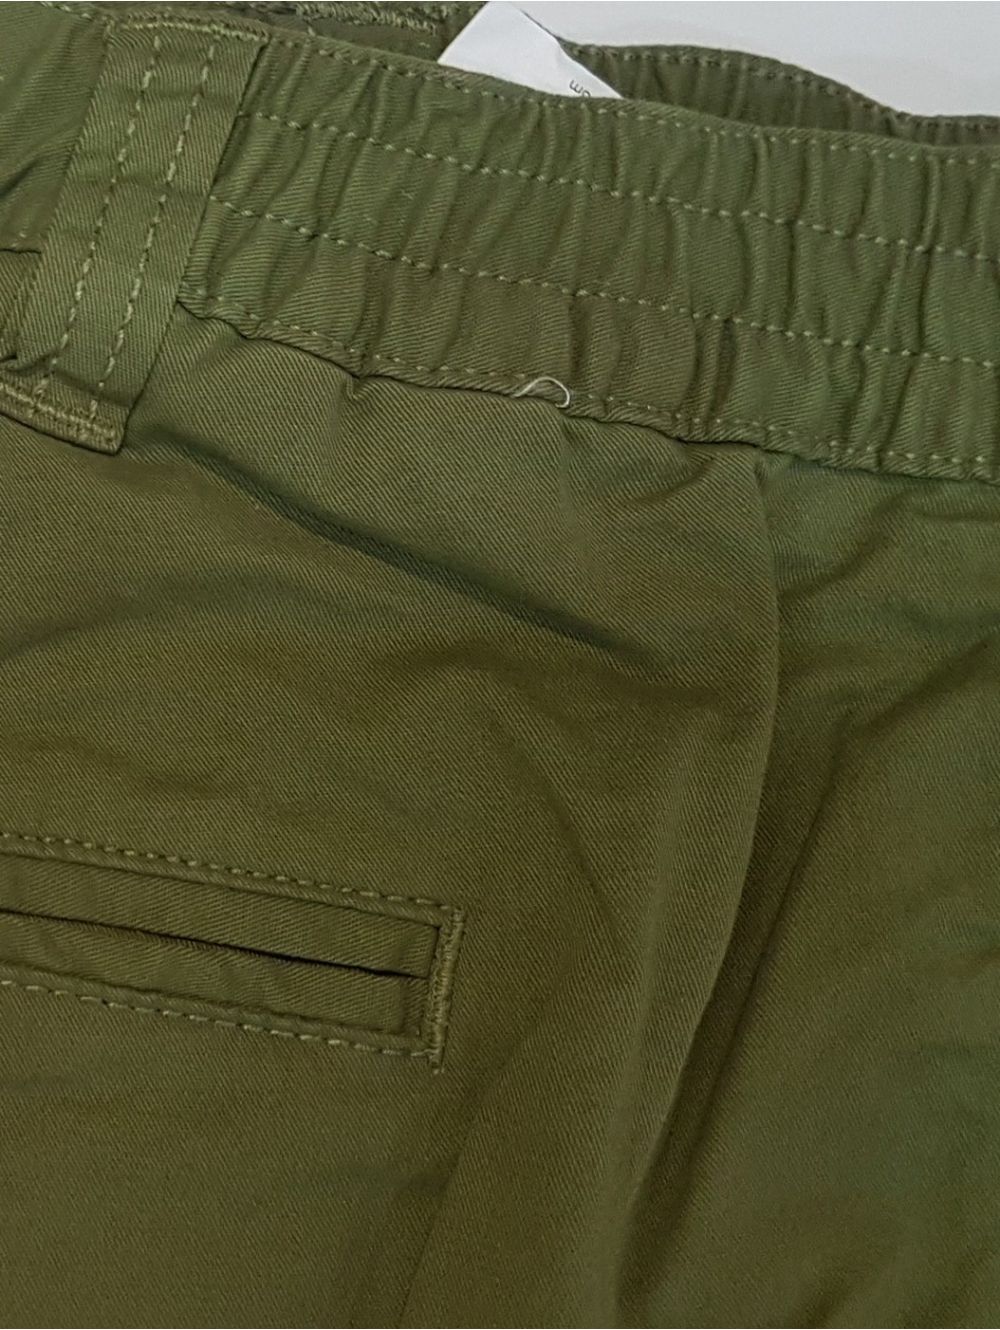 LUIGI MORINI Men's olive classic cargo shorts 38-4263 / 43 ...